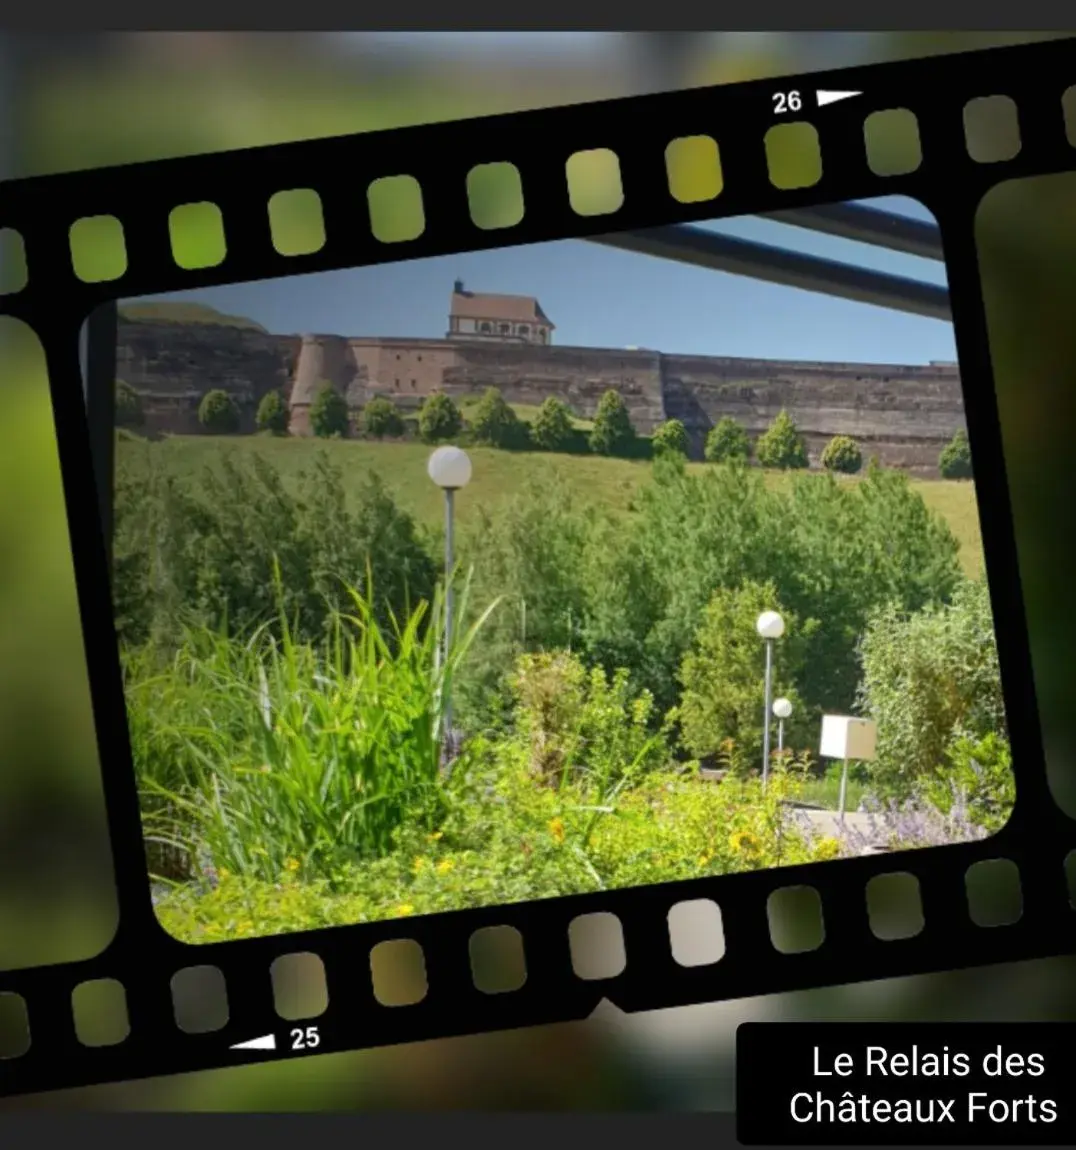 Landmark view in Le Relais Des Chateaux Forts